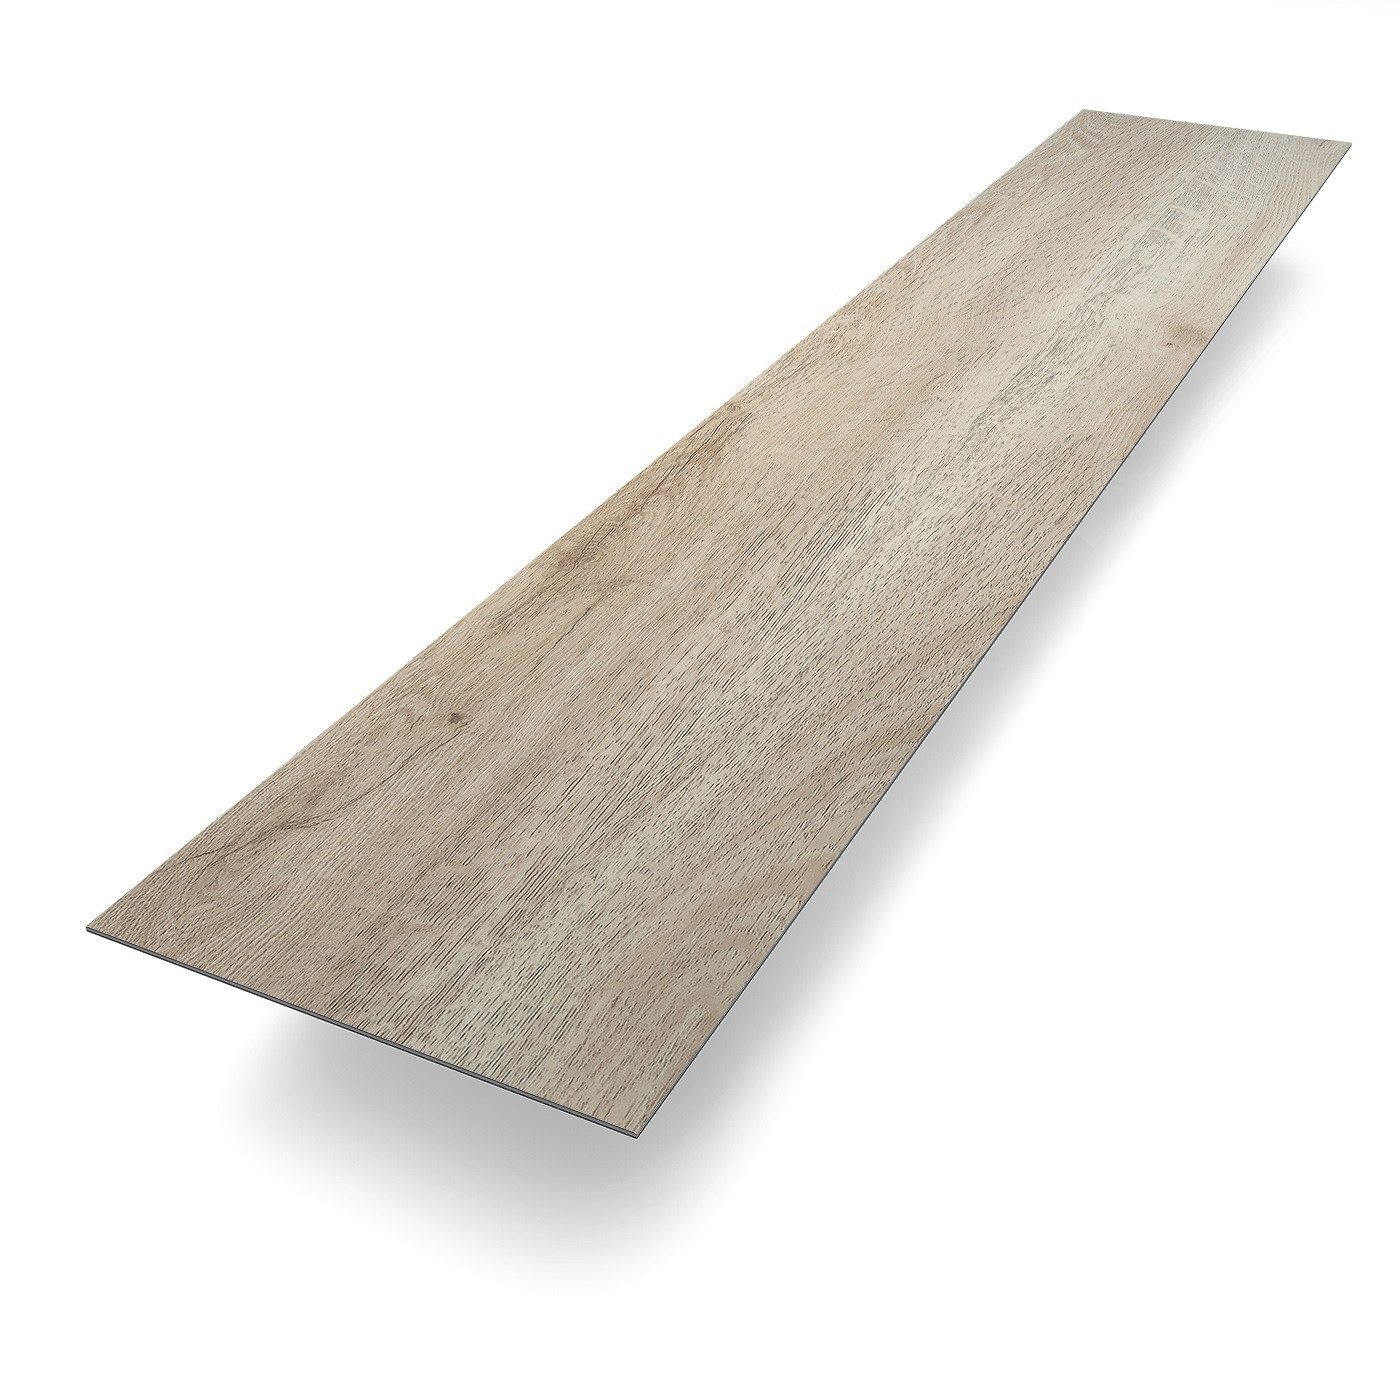 Bodenglück Vinylboden Klebe-Vinyl Ameland, Braun, natürliche Holzoptik, 1219 x 228 x 2,5 mm, Paketpreis für 3,34 m², Fußwarm, wasserfest, pflegeleicht, minimale Aufbauhöhe, für Fußbodenheizung geeignet